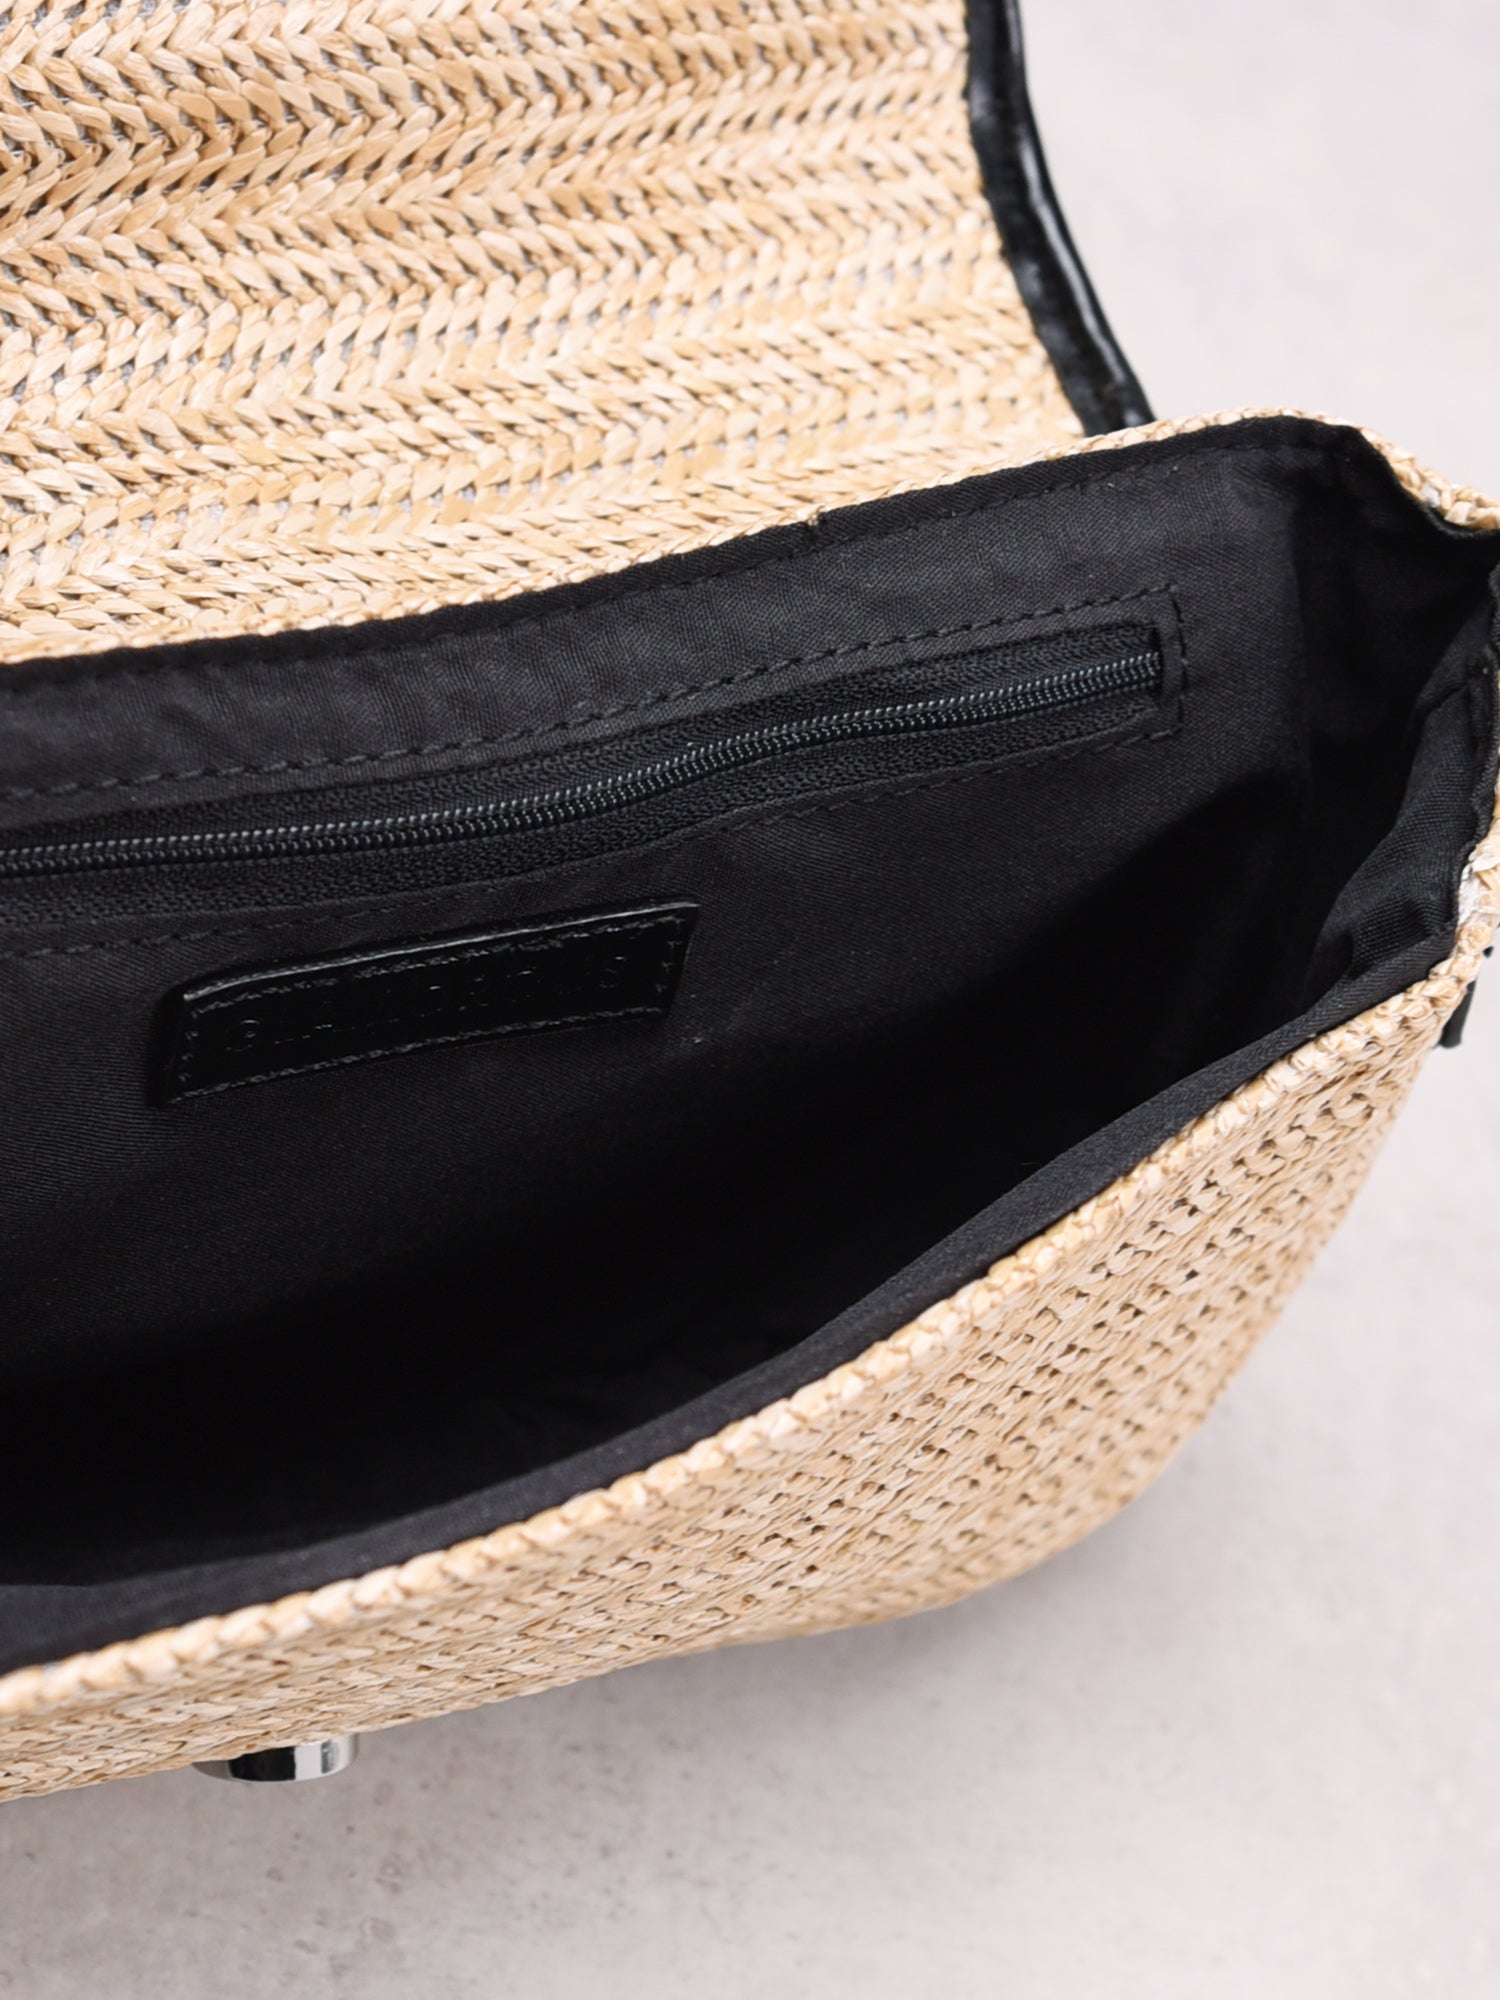 Natural Weave Baguette Shoulder Bag